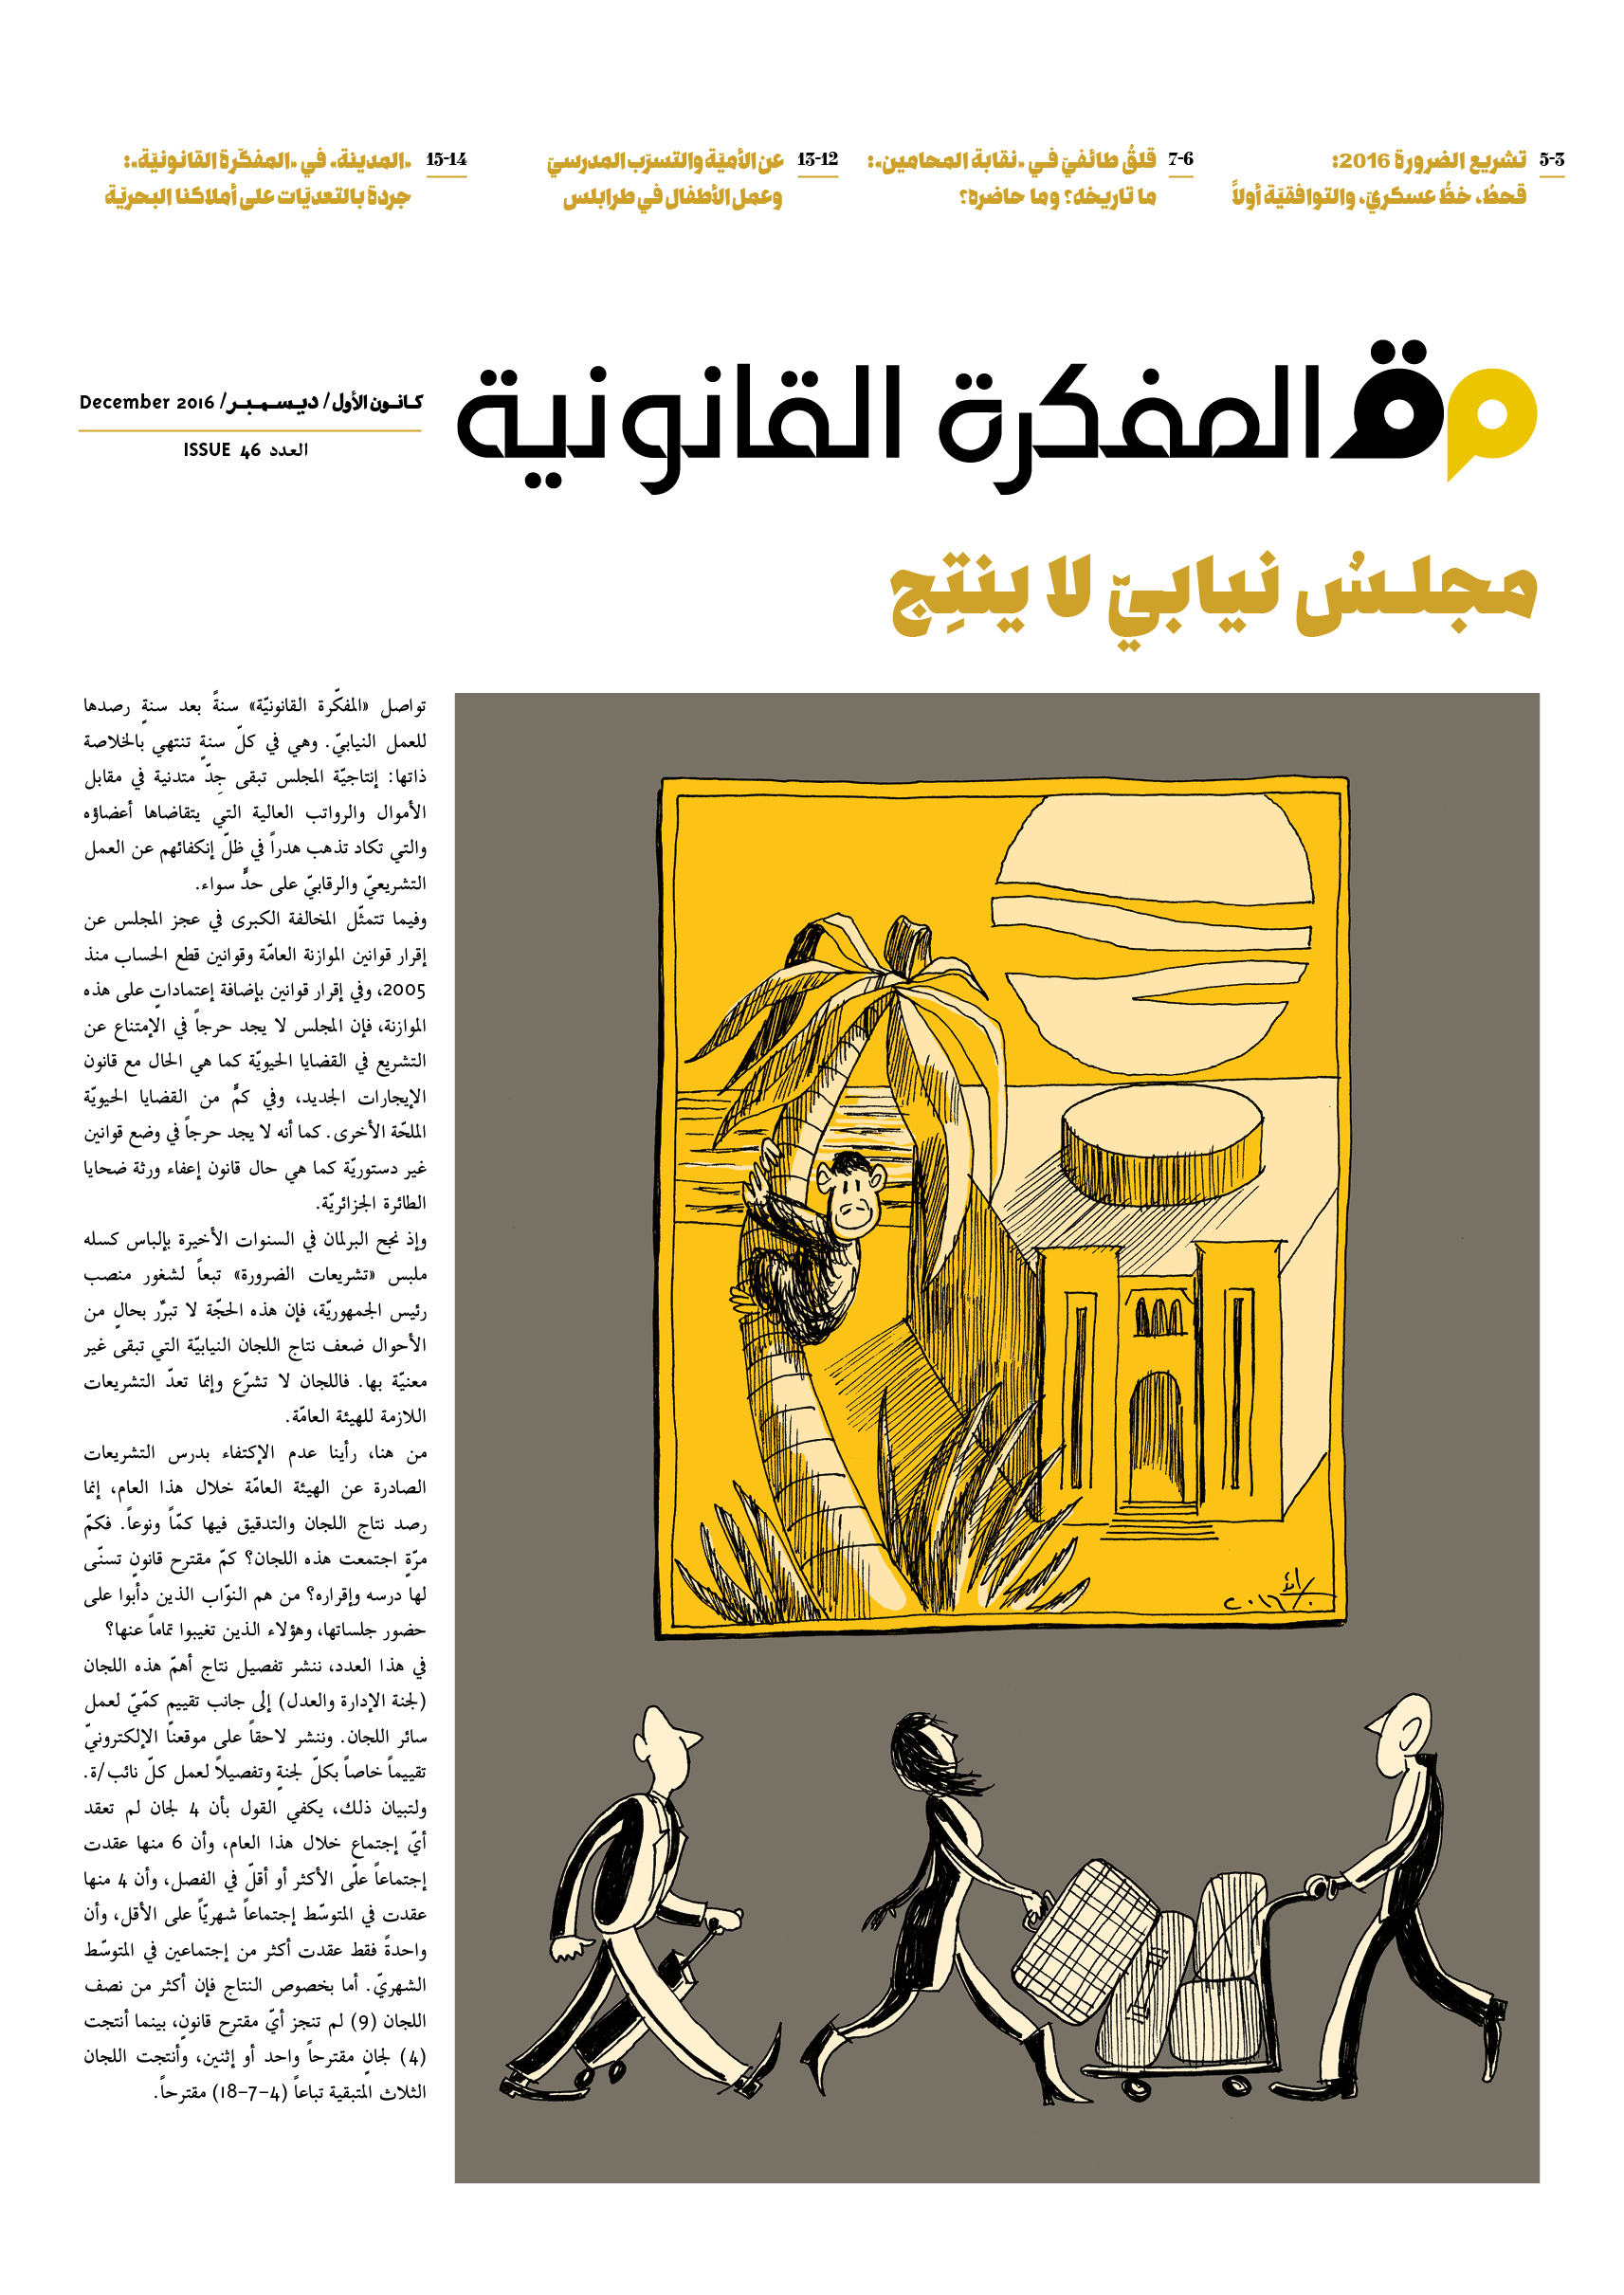 صدر العدد 46 من مجلة المفكرة القانونية بالتعاون مع جريدة السفير